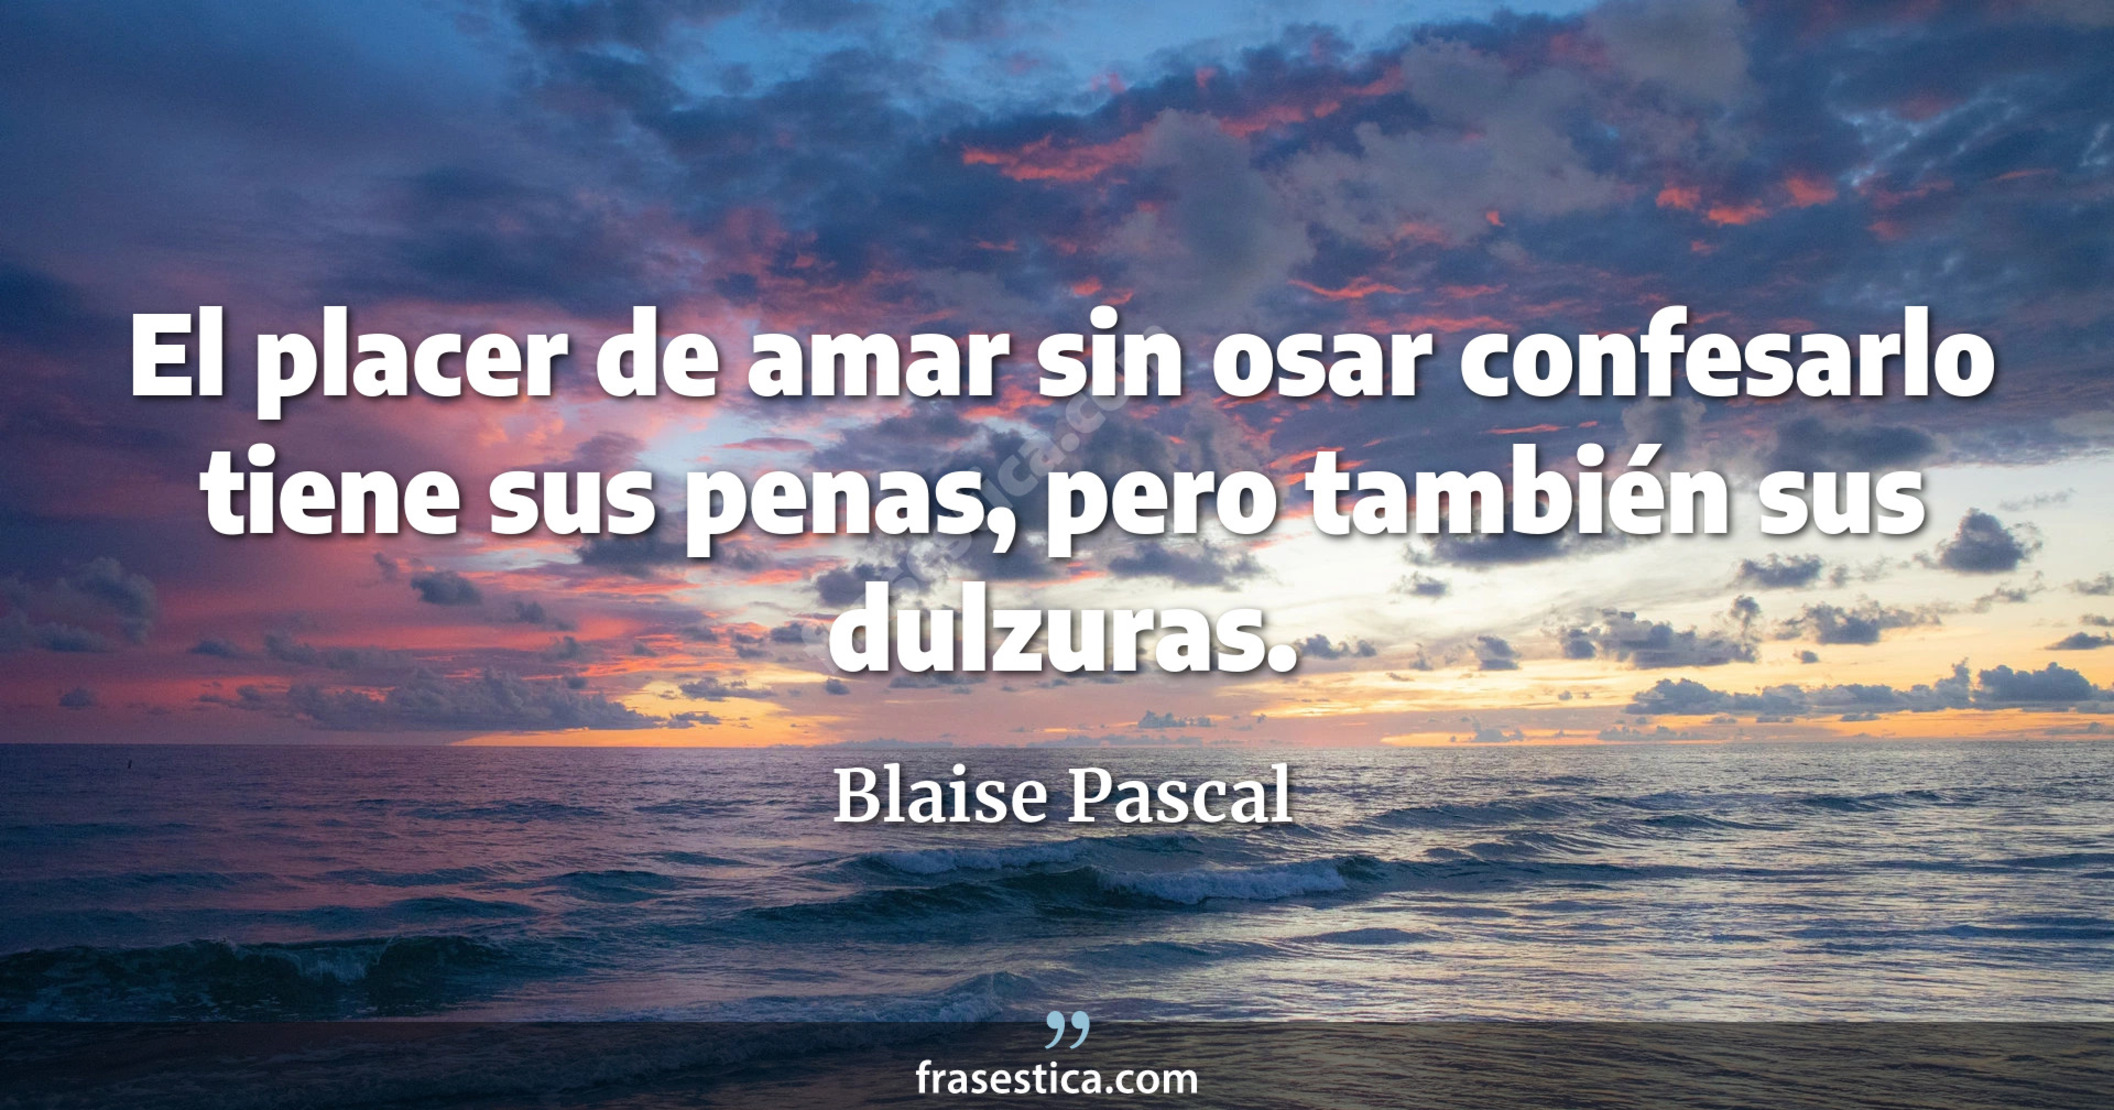 El placer de amar sin osar confesarlo tiene sus penas, pero también sus dulzuras. - Blaise Pascal